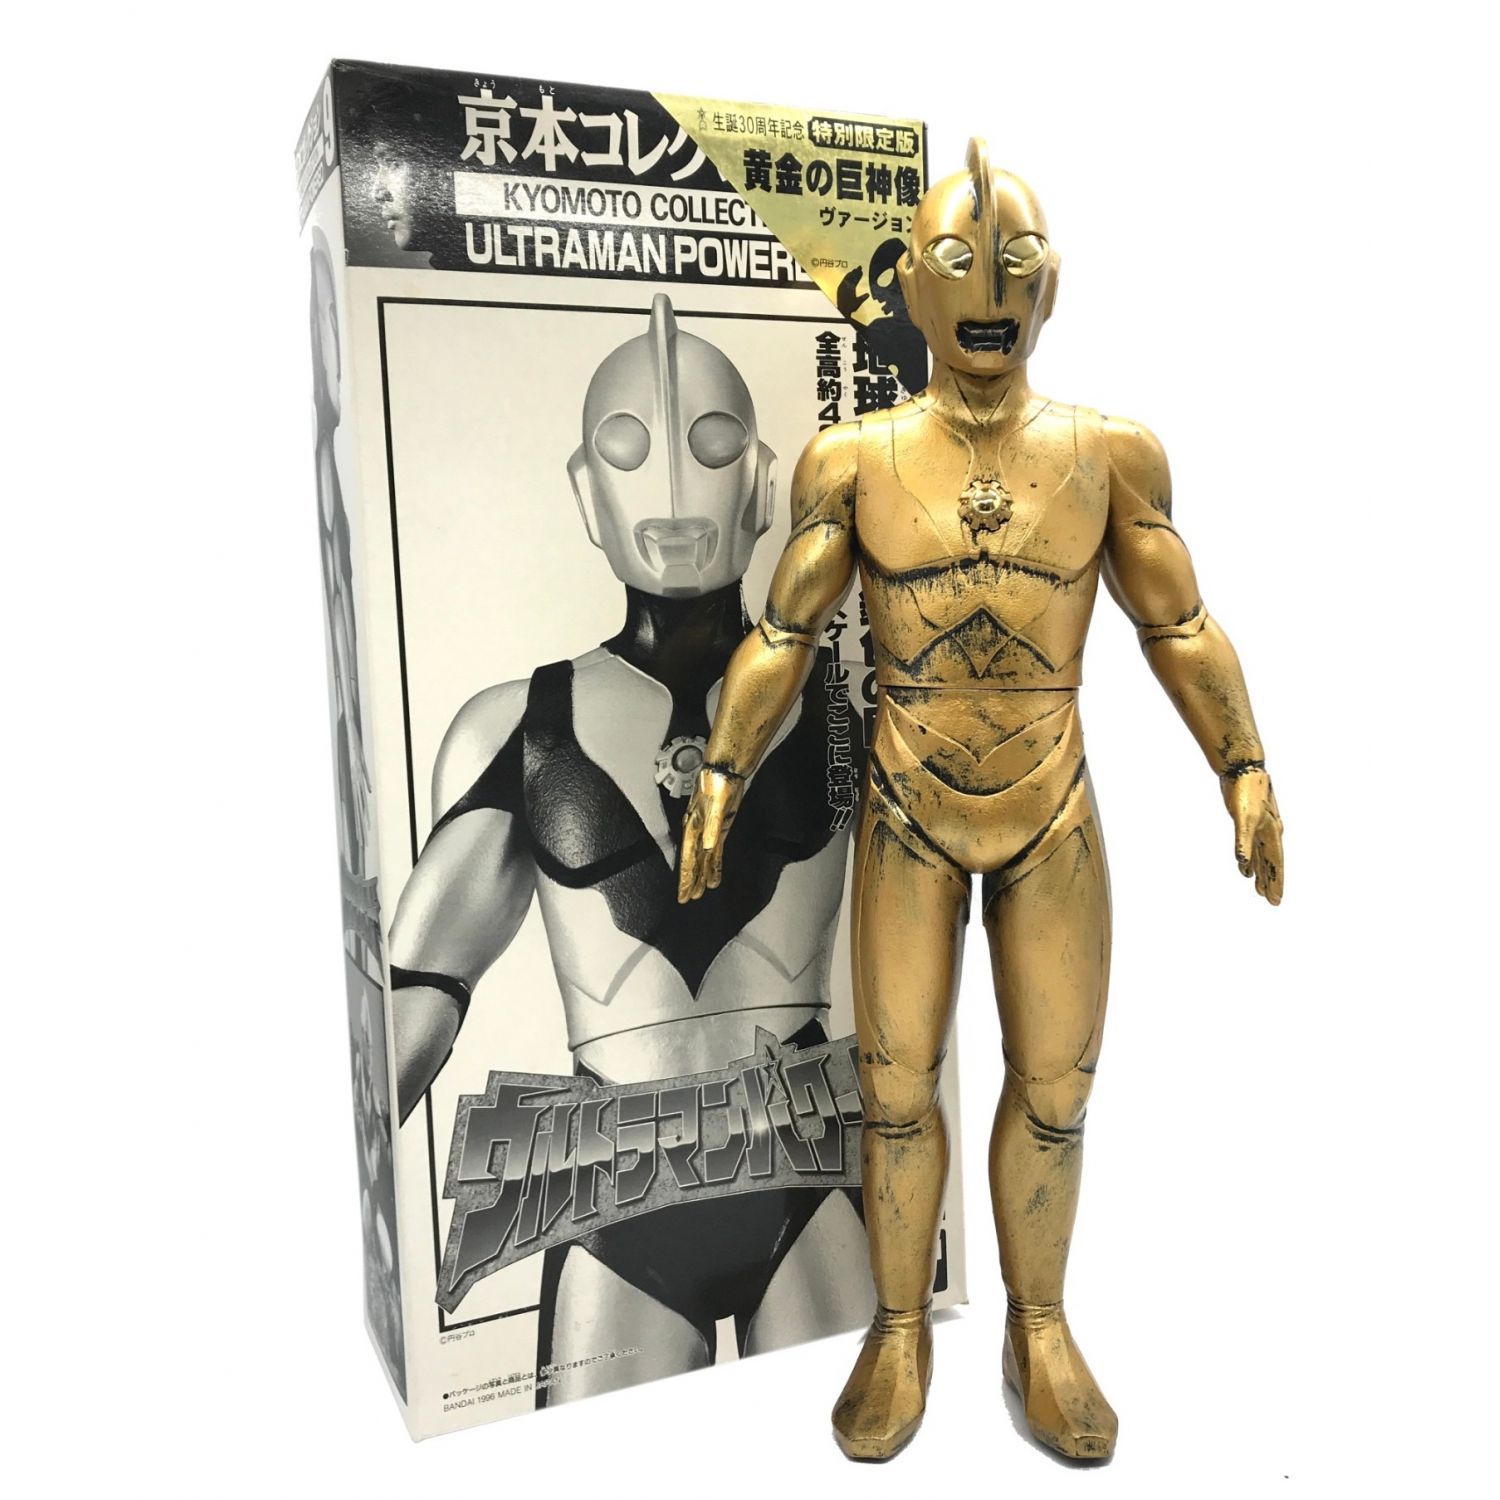 ウルトラマン 黄金の巨神像Ver 2京本コレクション